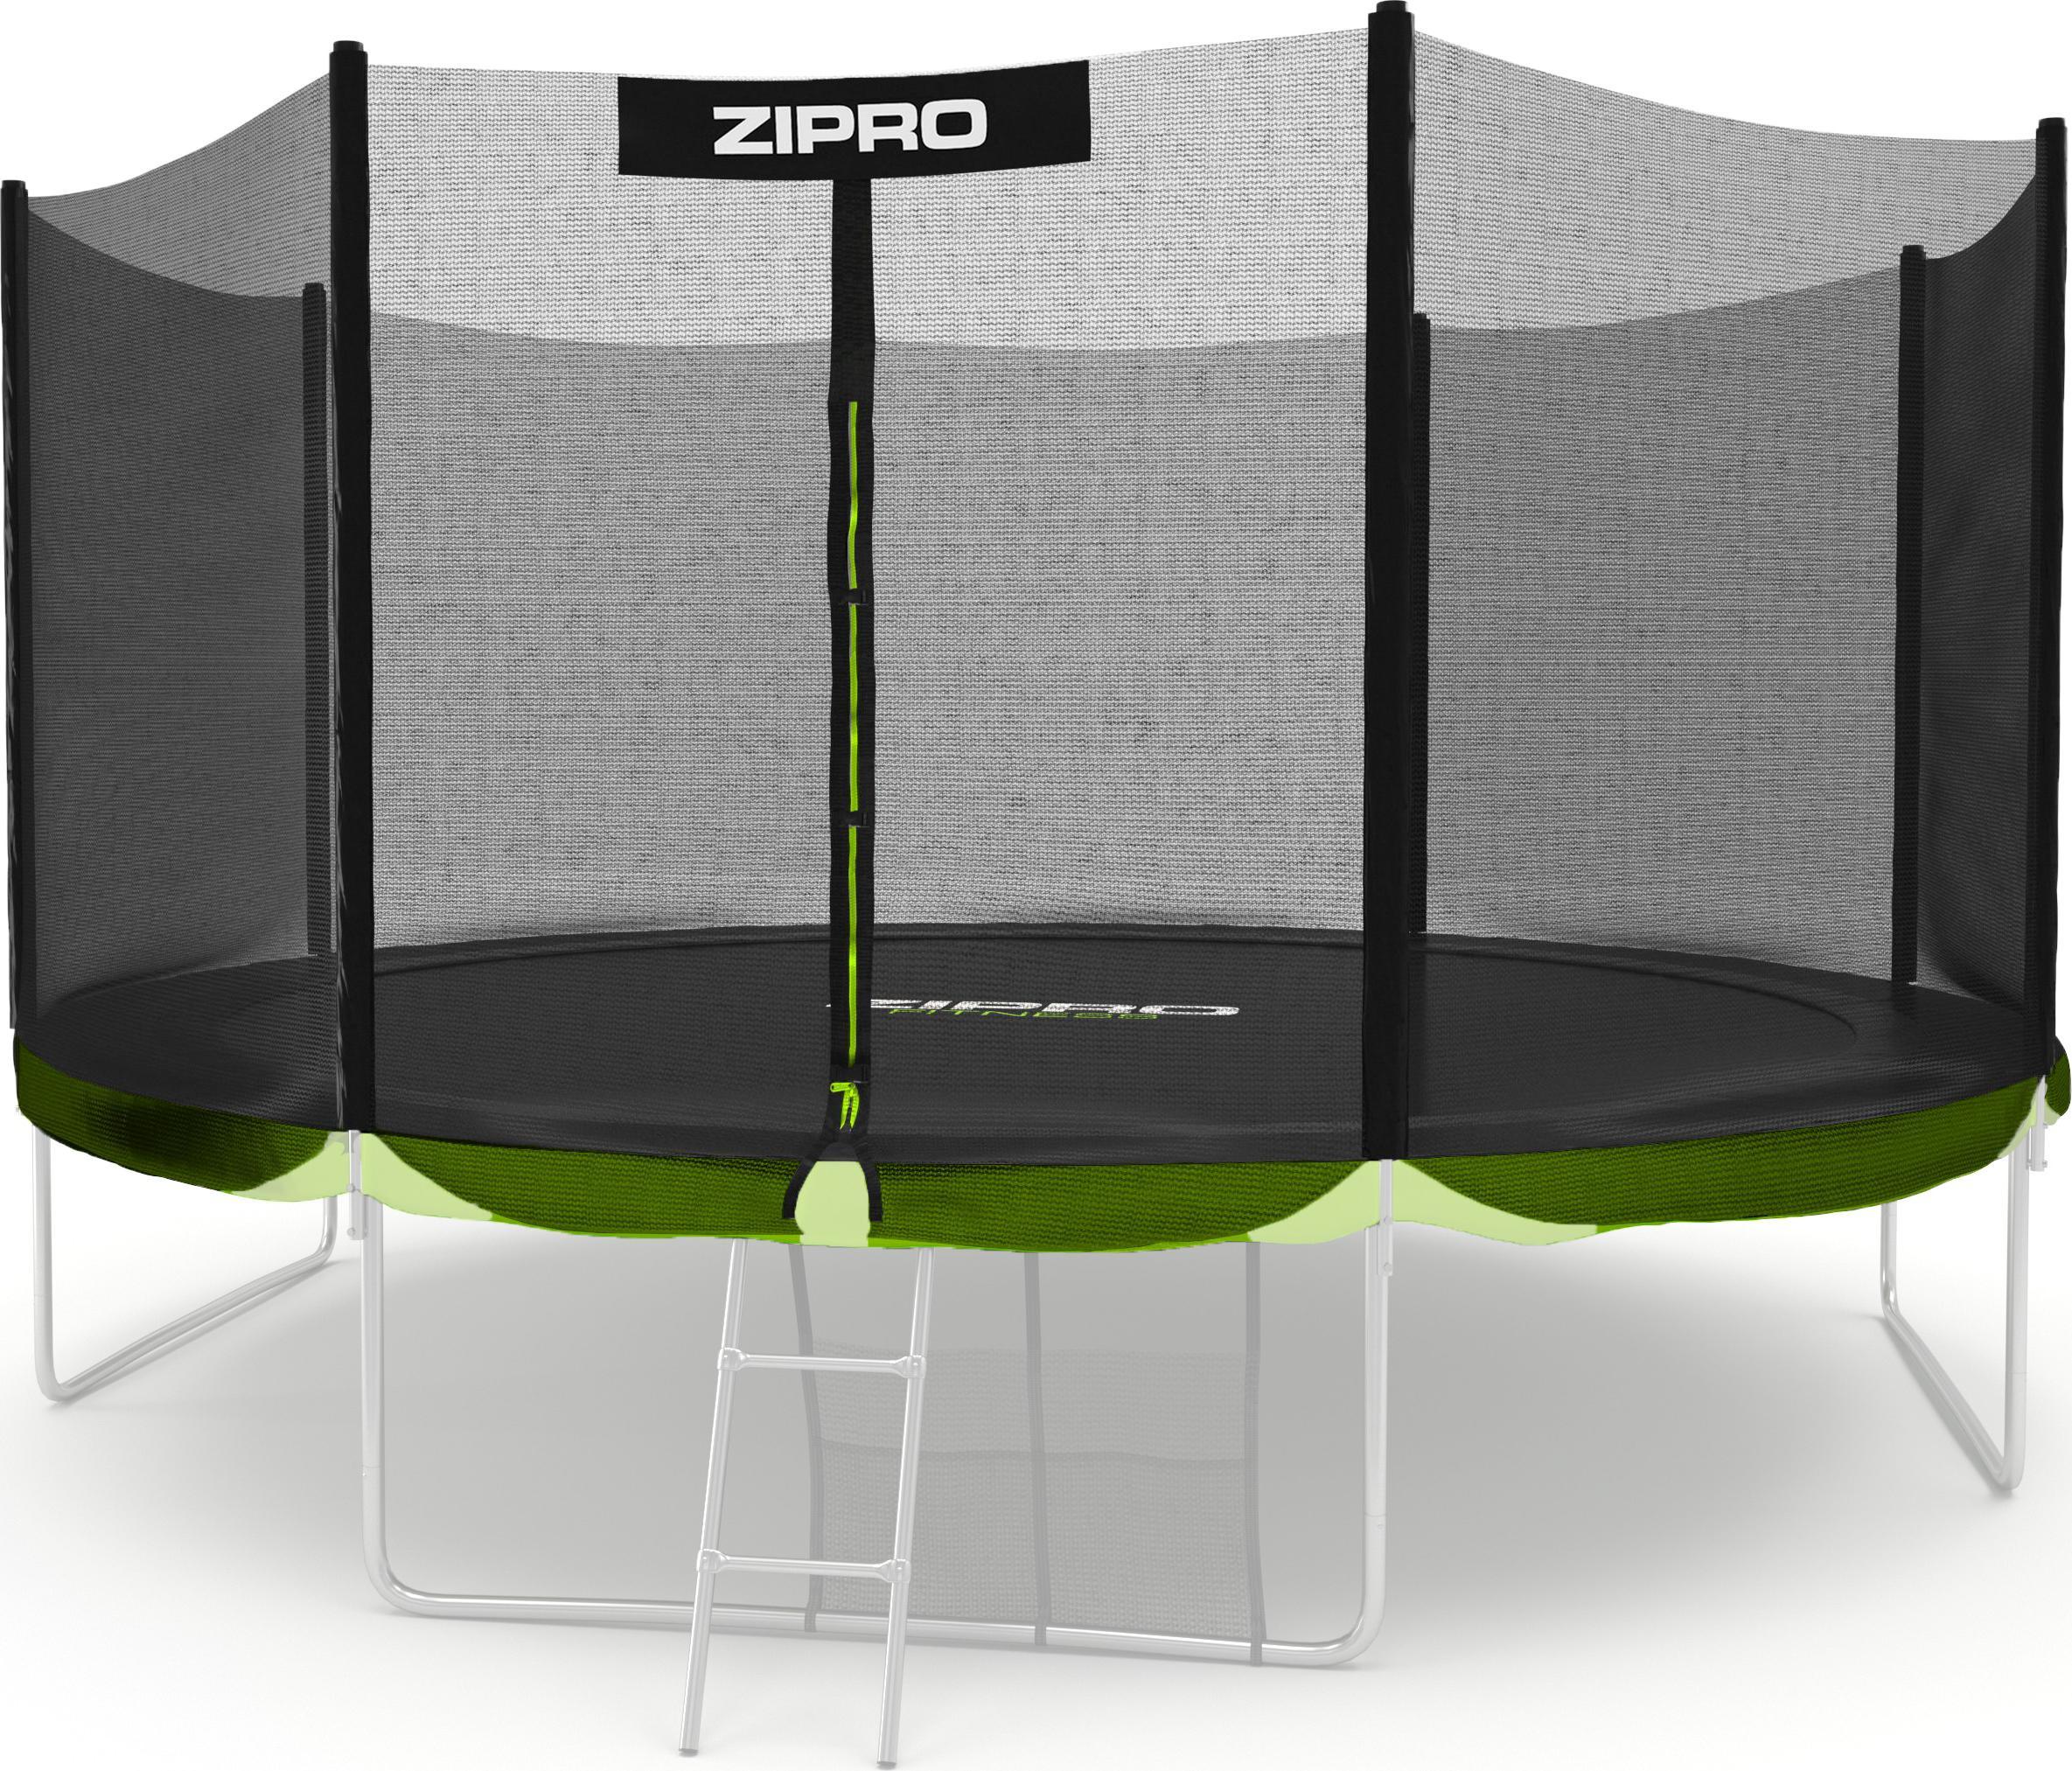 Zipro Siatka ochronna zewnetrzna do trampoliny 14FT/435cm 5825370